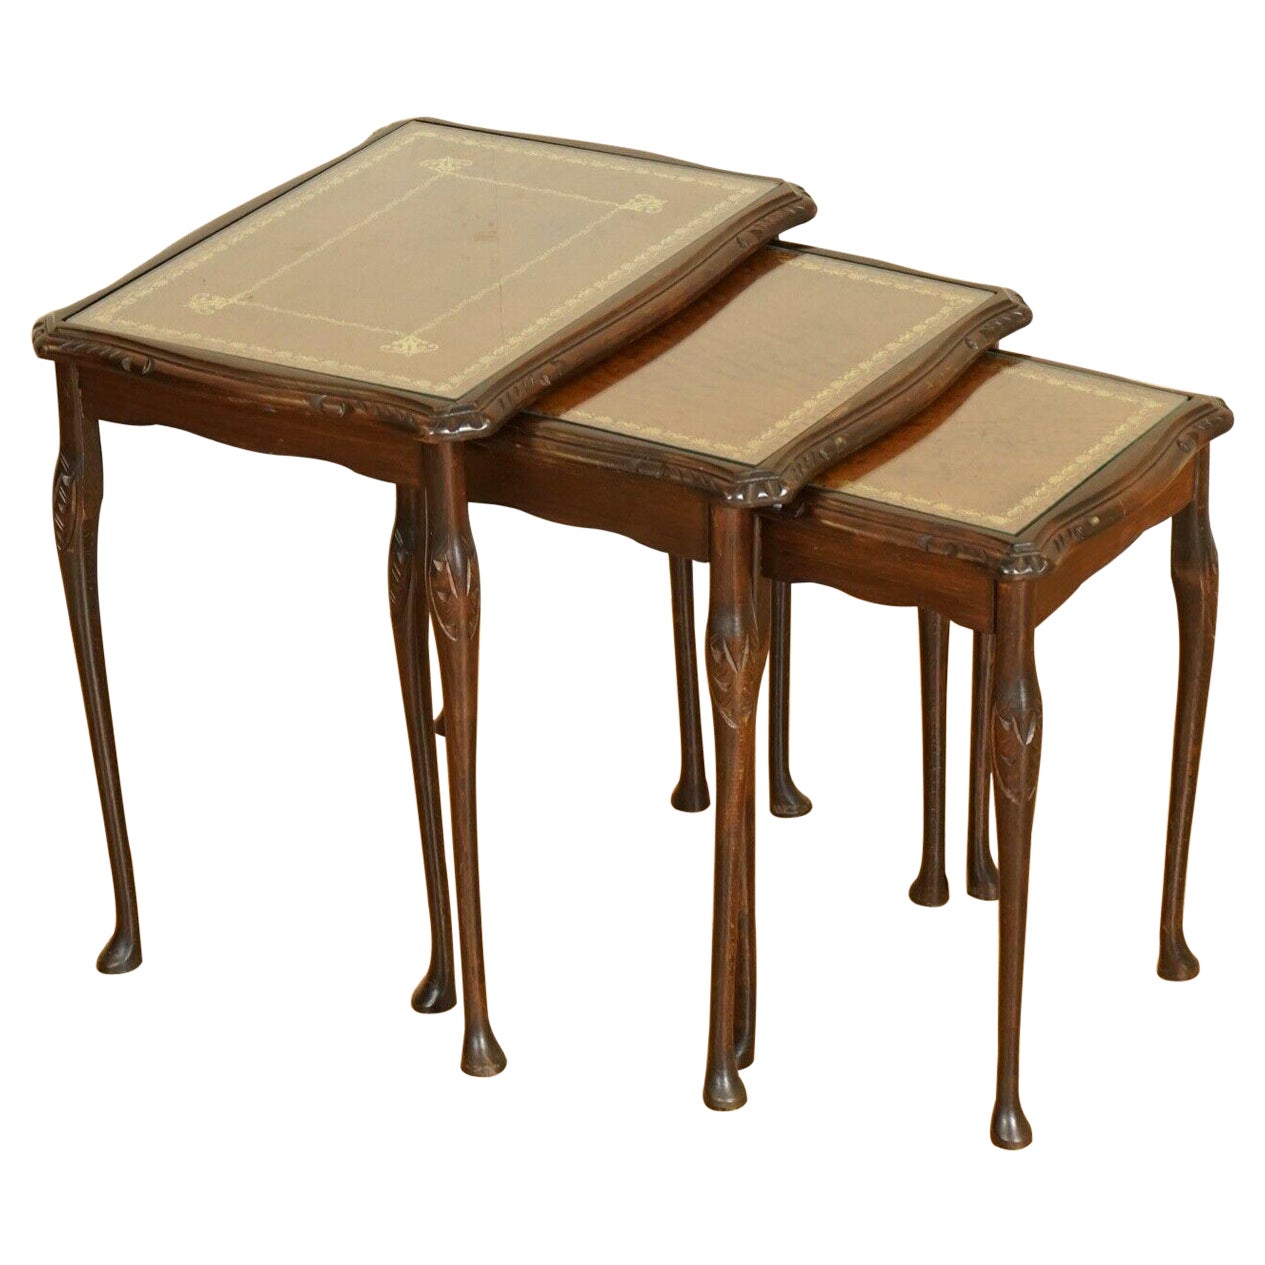 Table en bois de feuillus avec pieds de style Queen Anne et plateau en cuir gaufré marron